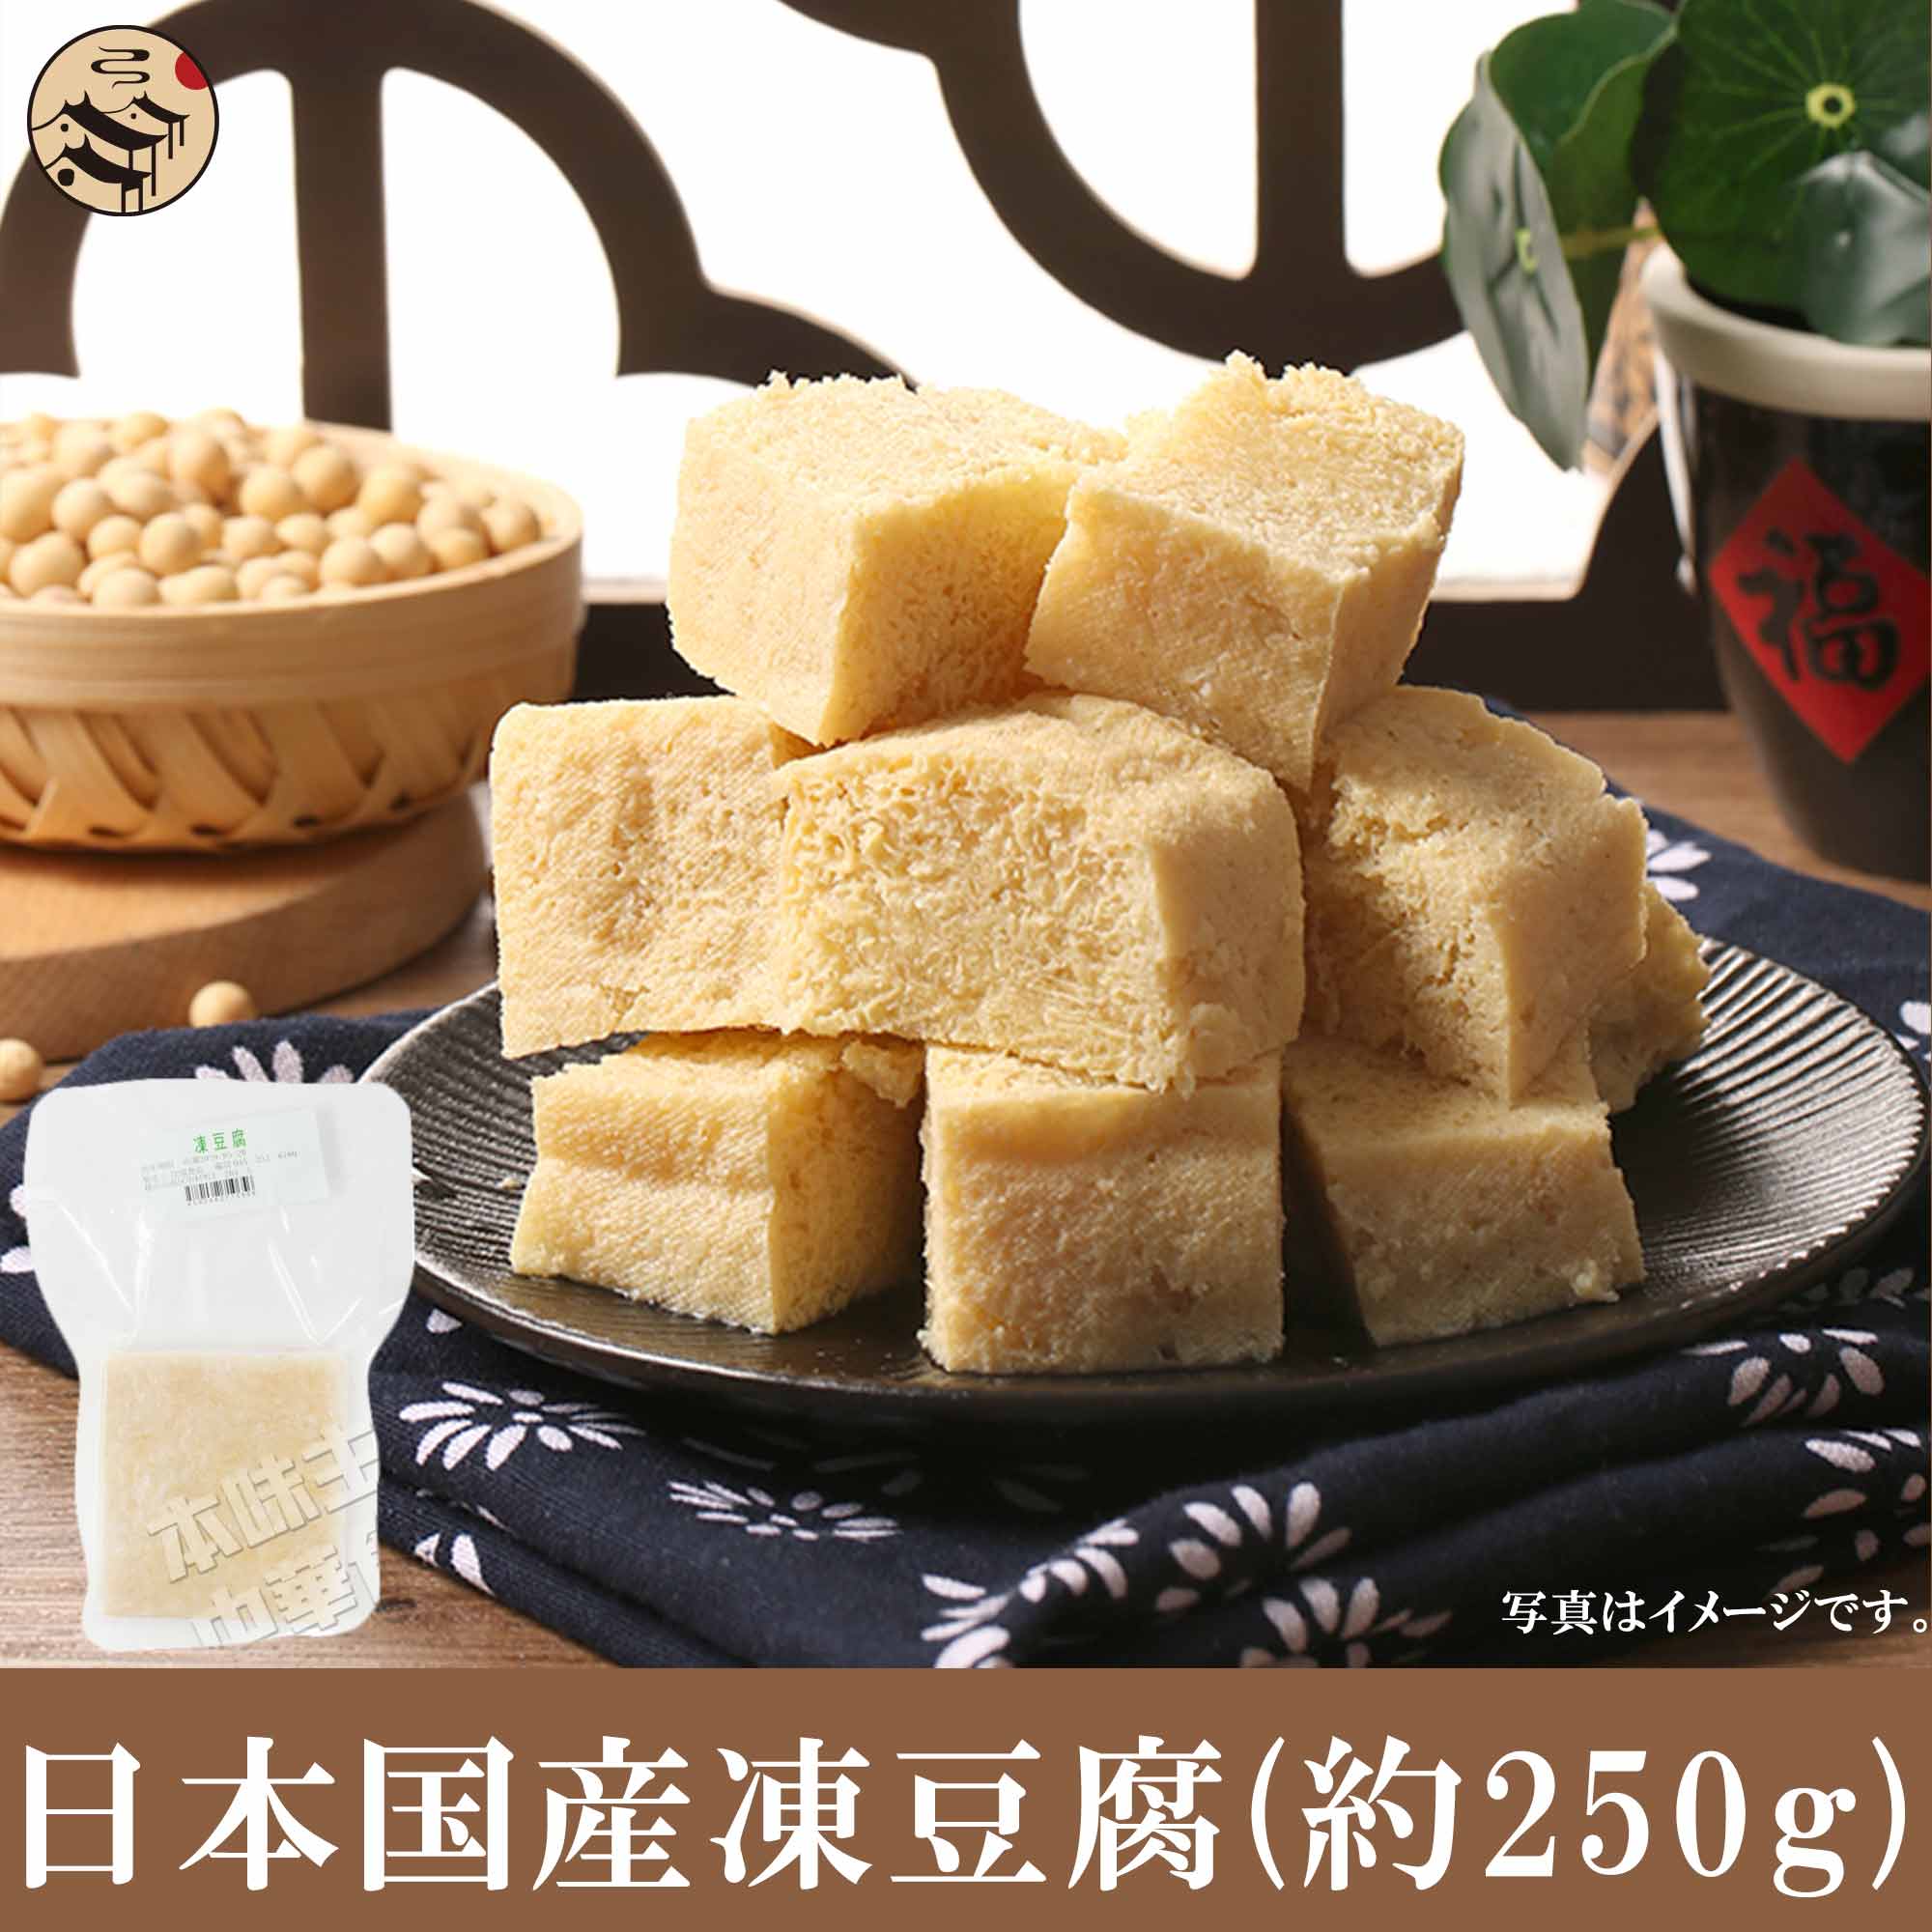 日本国産凍豆腐(約250g)